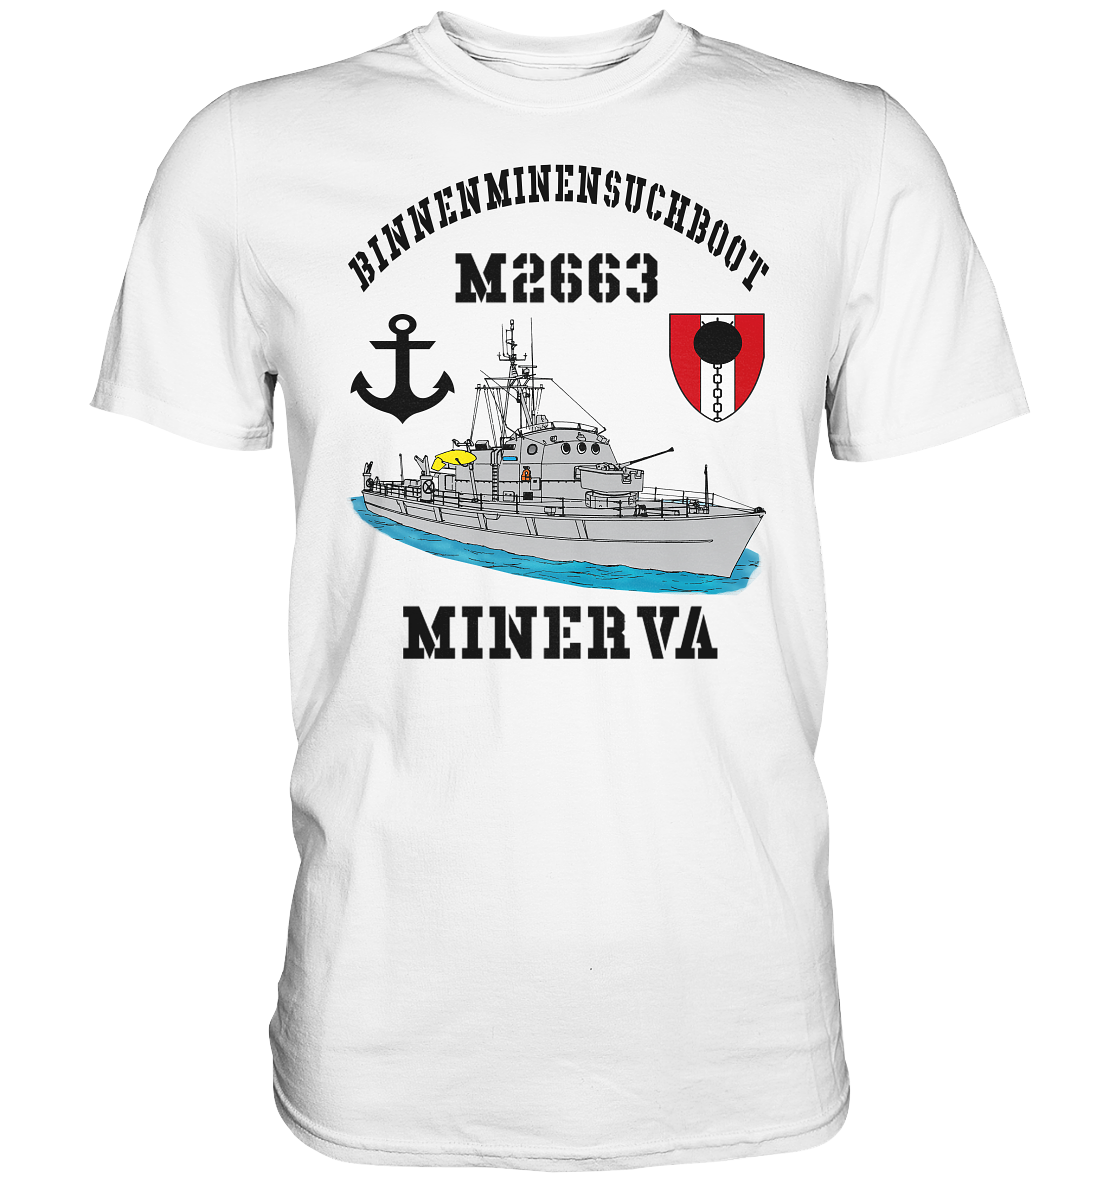 BiMi M2663 MINERVA 7.MSG Anker - Premium Shirt